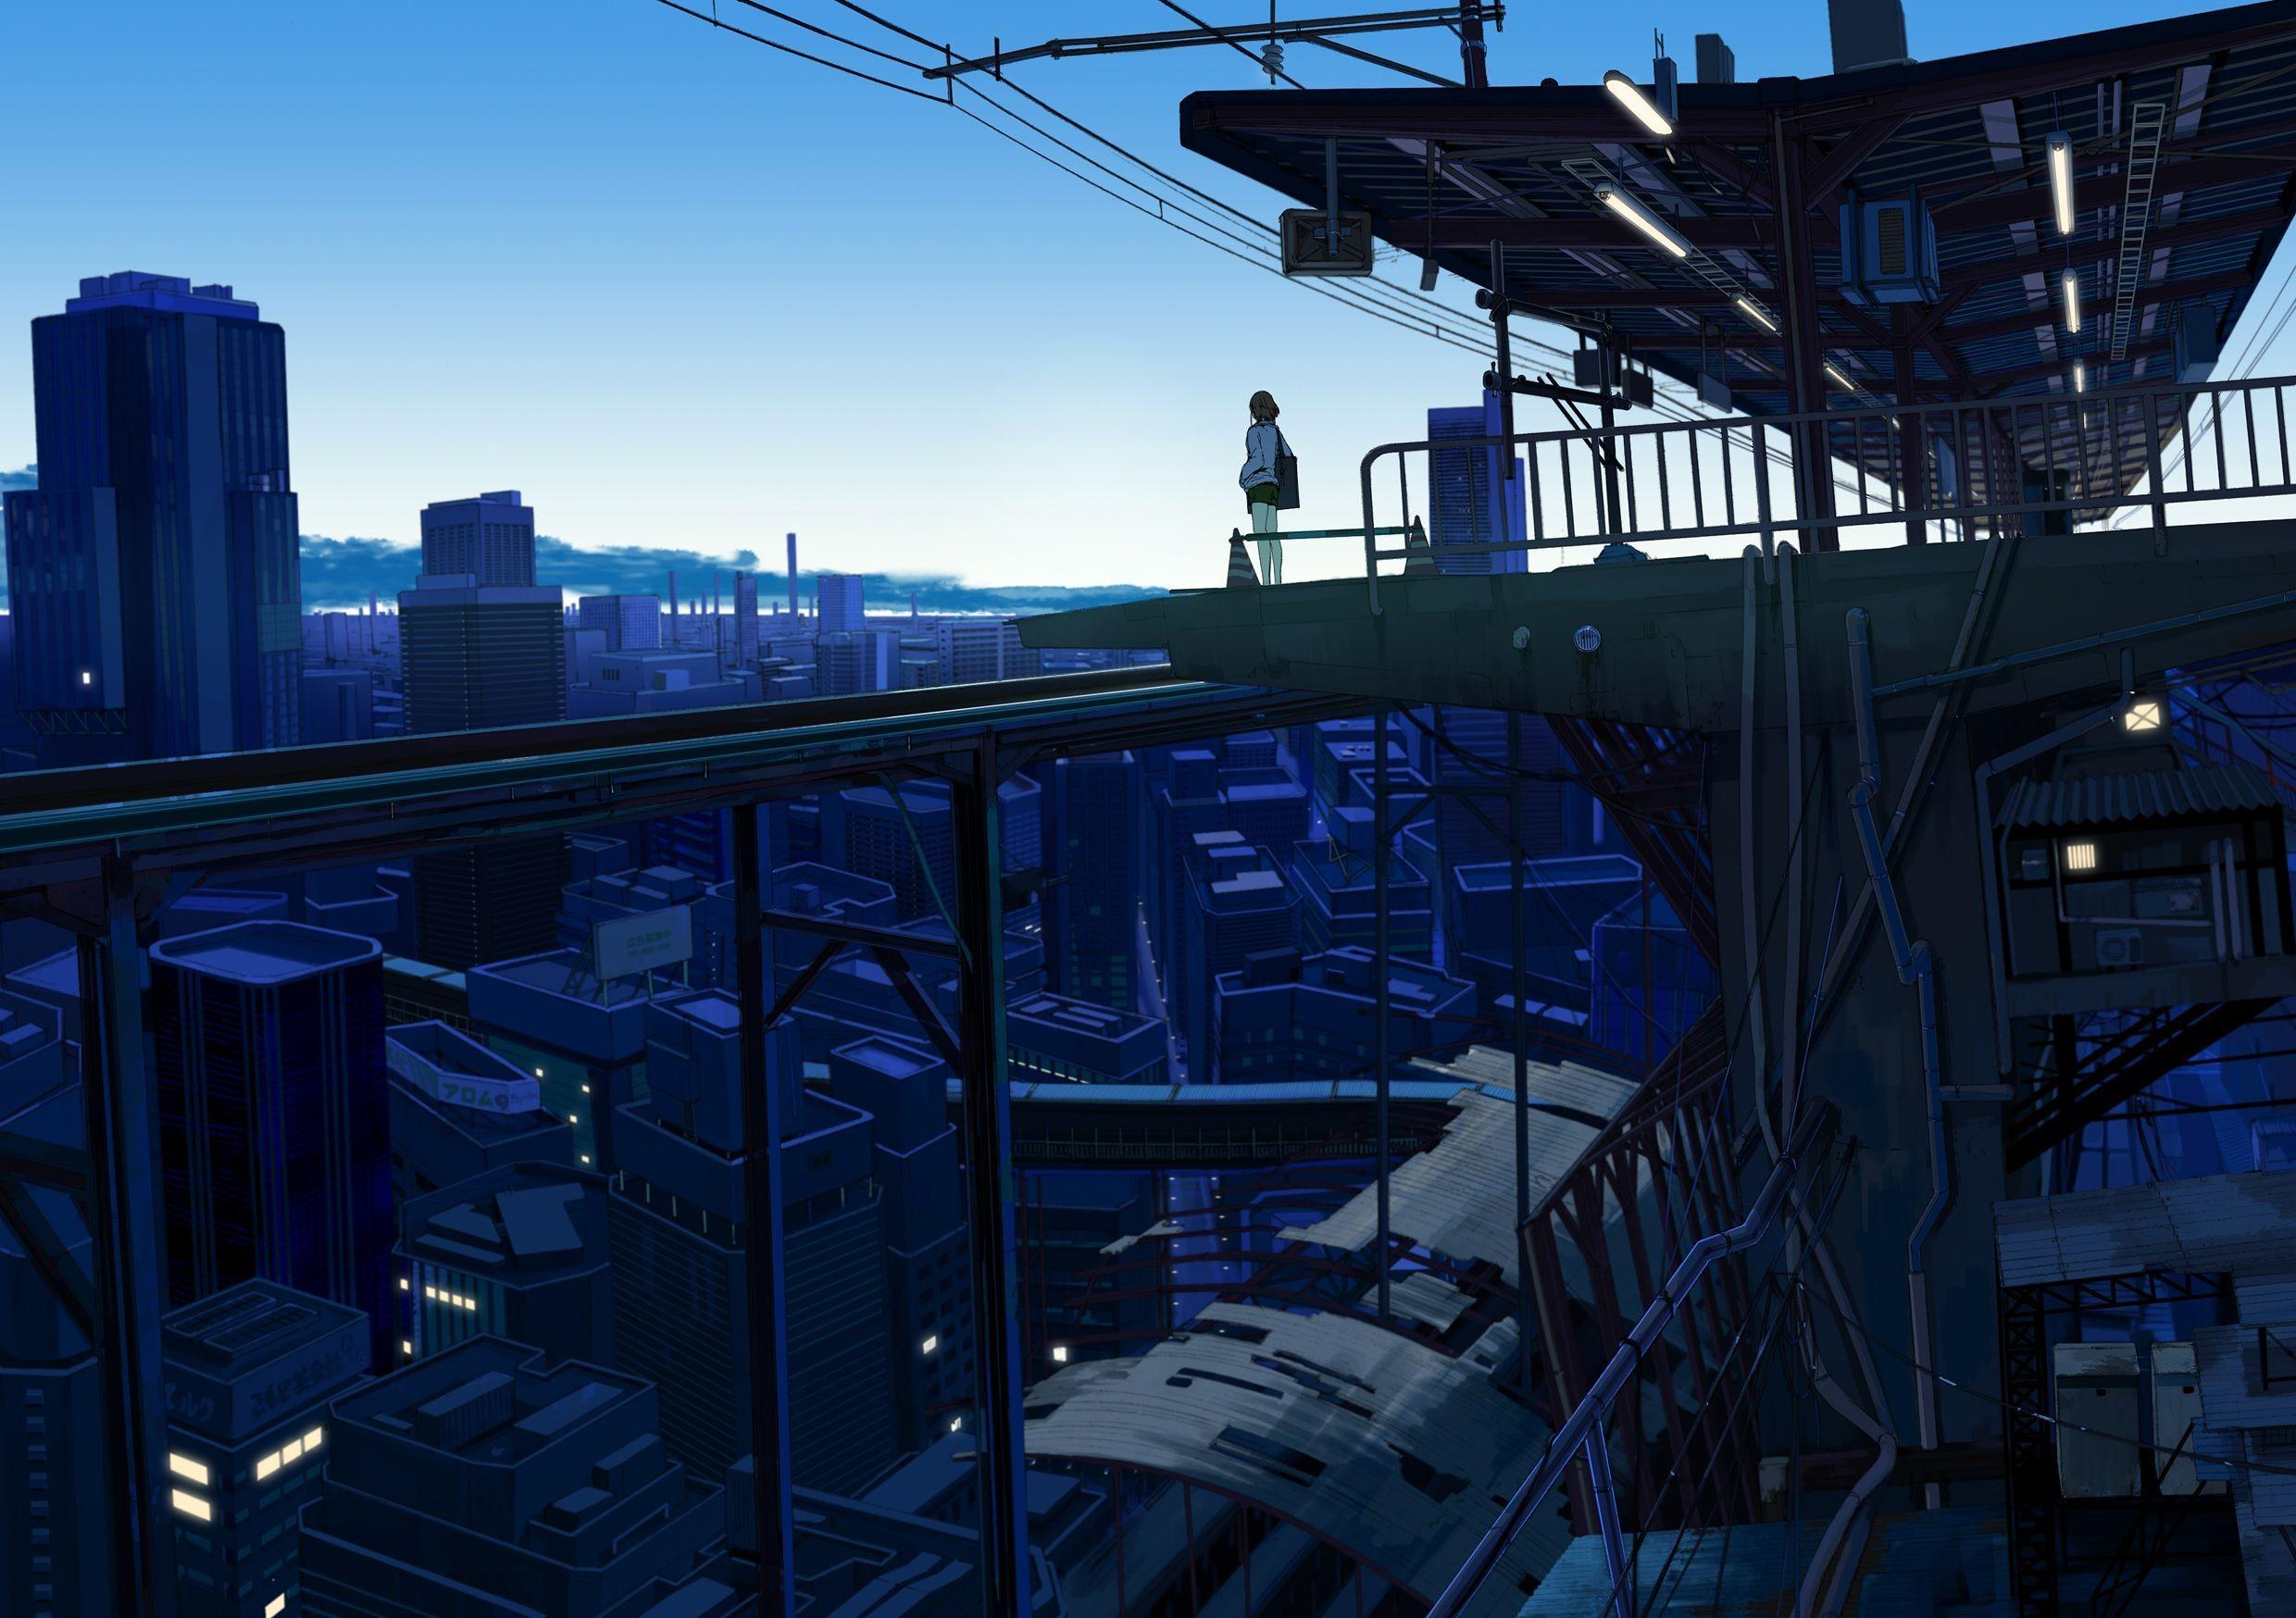 Aesthetic Anime Dark City Background Wallpaper Portal